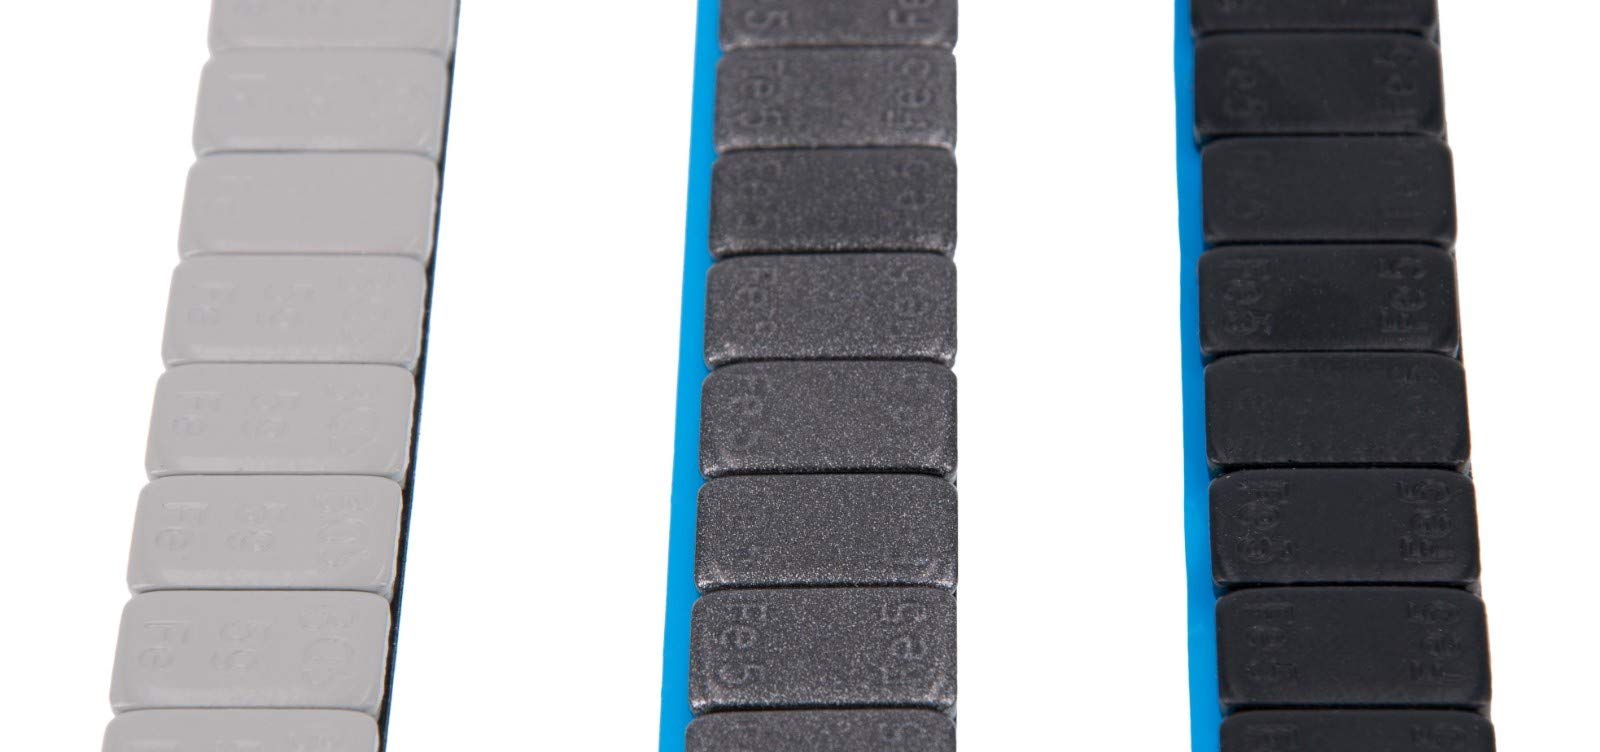 Levando 7X Auswuchtgewichte SCHWARZ & GRAU 420g Klebegewichte Stahlgewichte Kleberiegel 60g mit ABRISSKANTE verzinkt & kunststoffbeschichtet 3 Farben BGS, Farbe: Schwarz von Levando